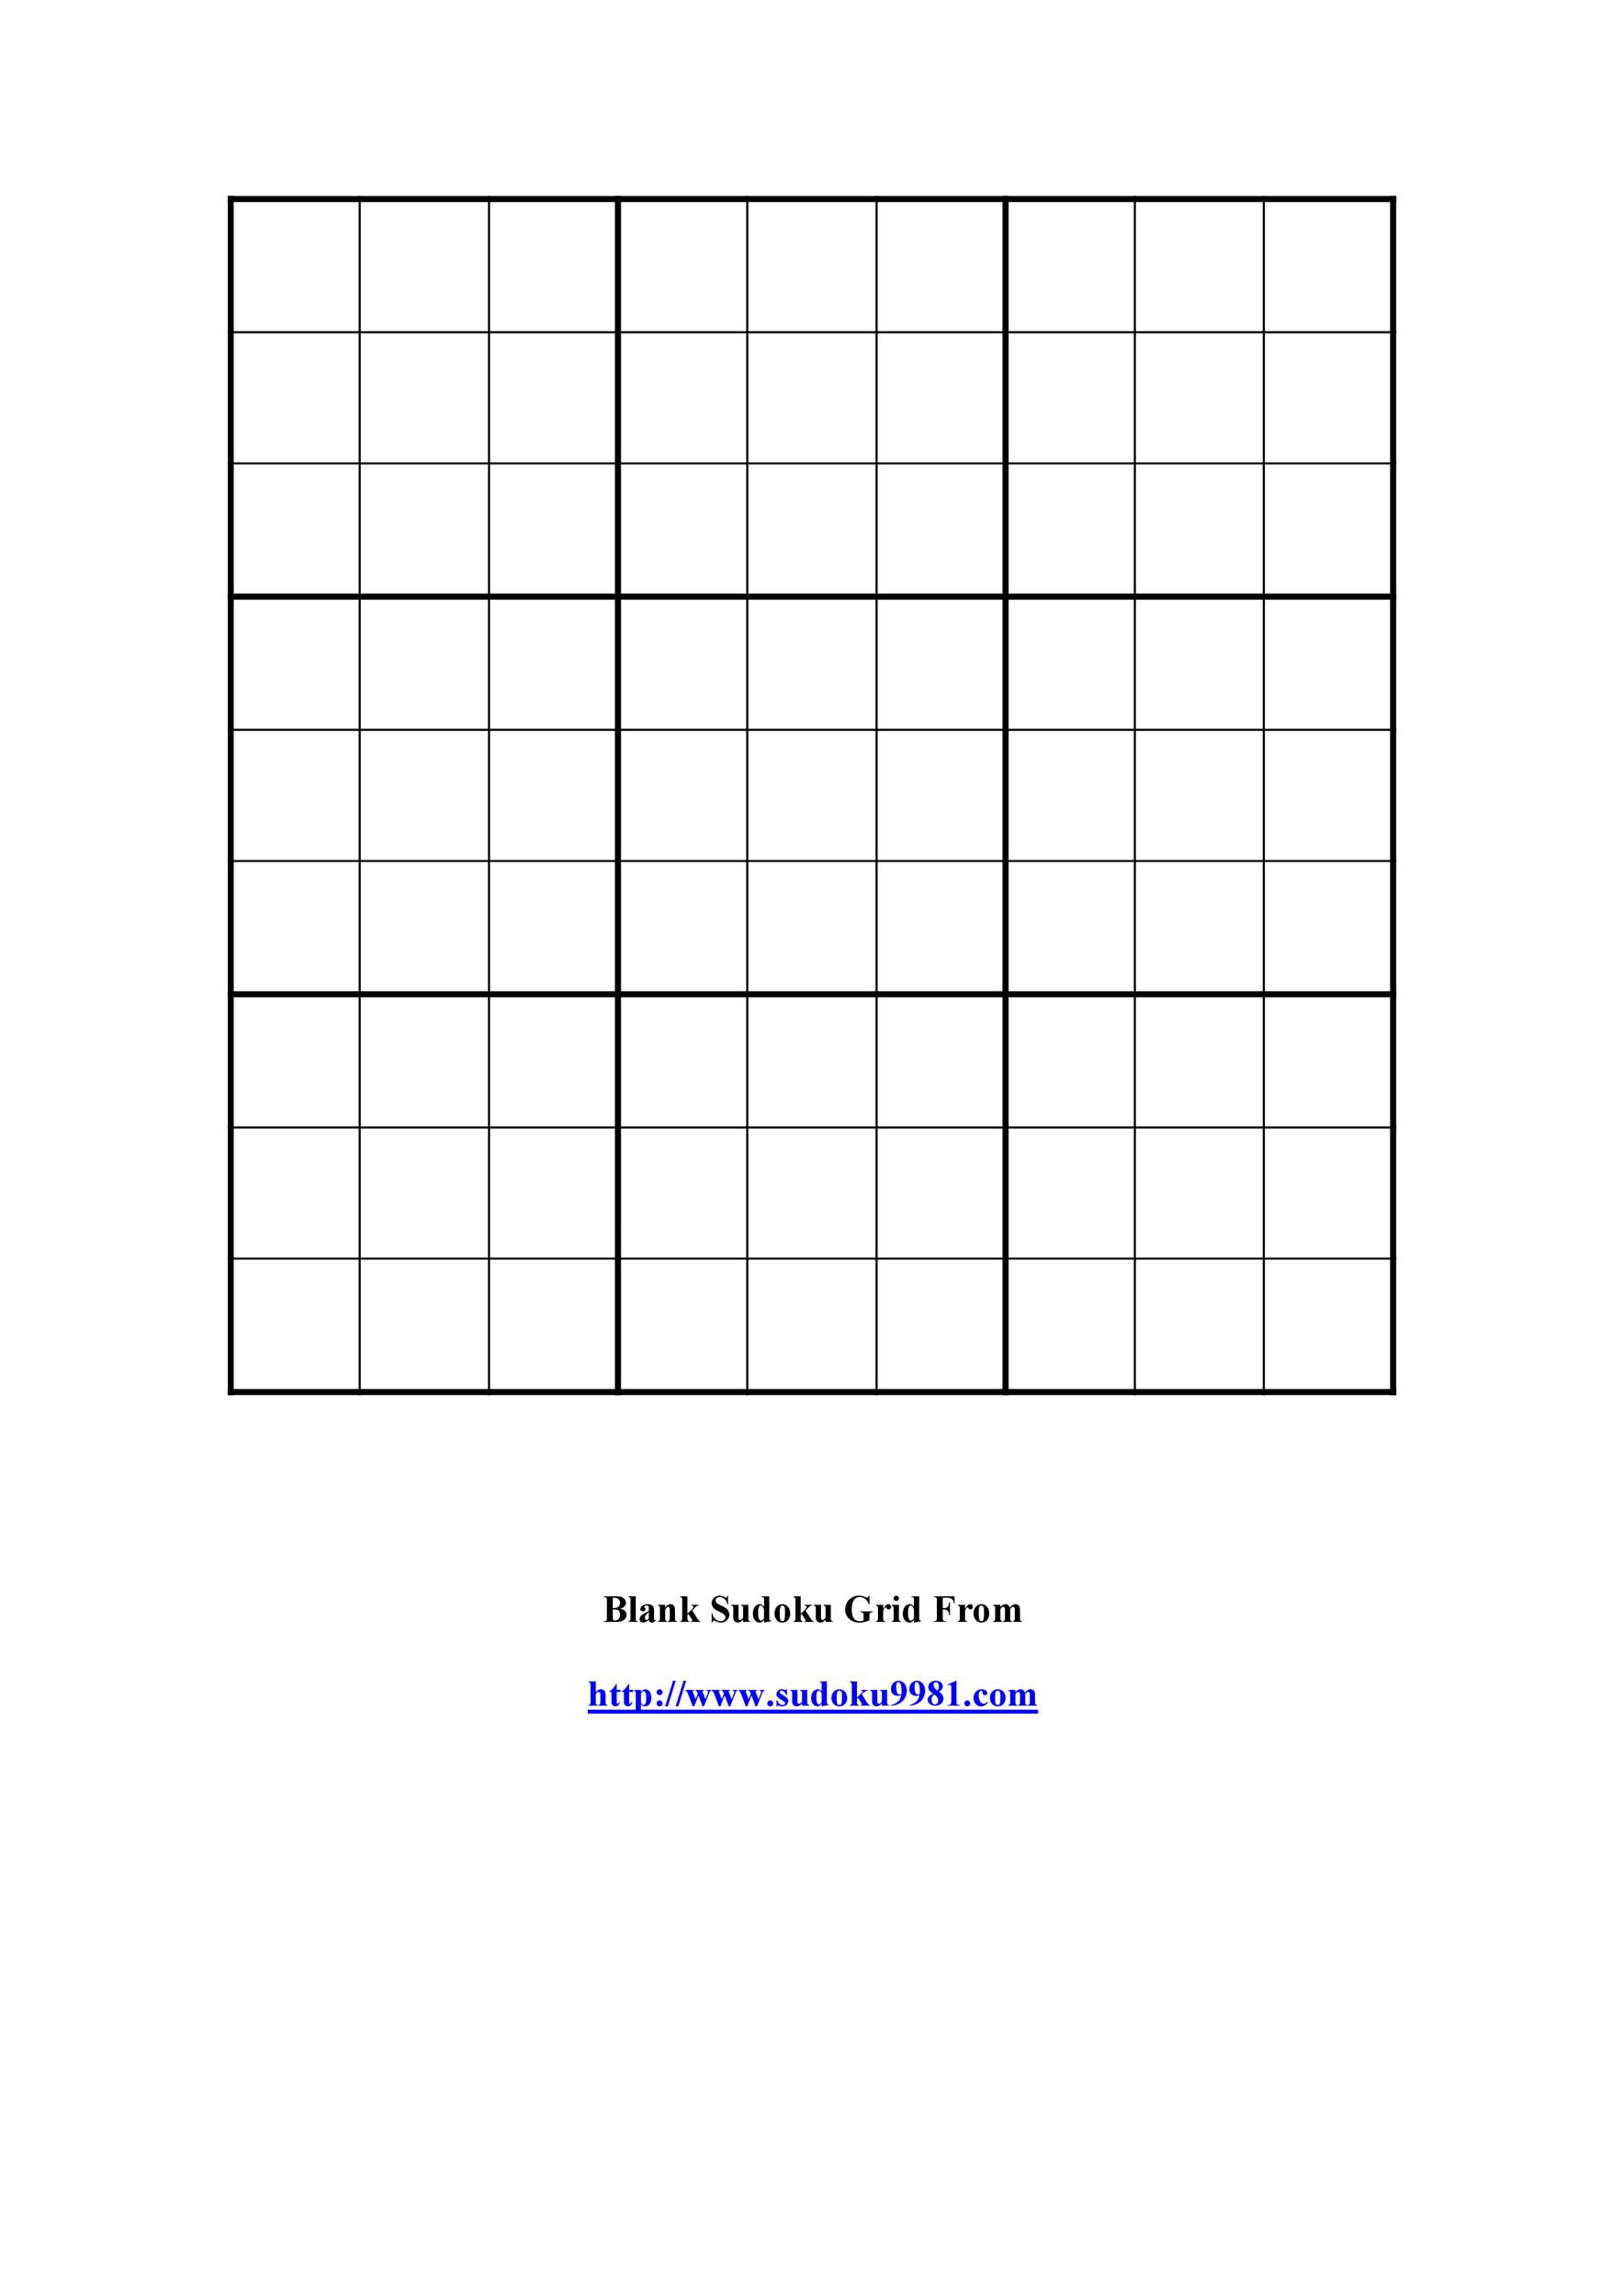 36x36 Sudoku Printable